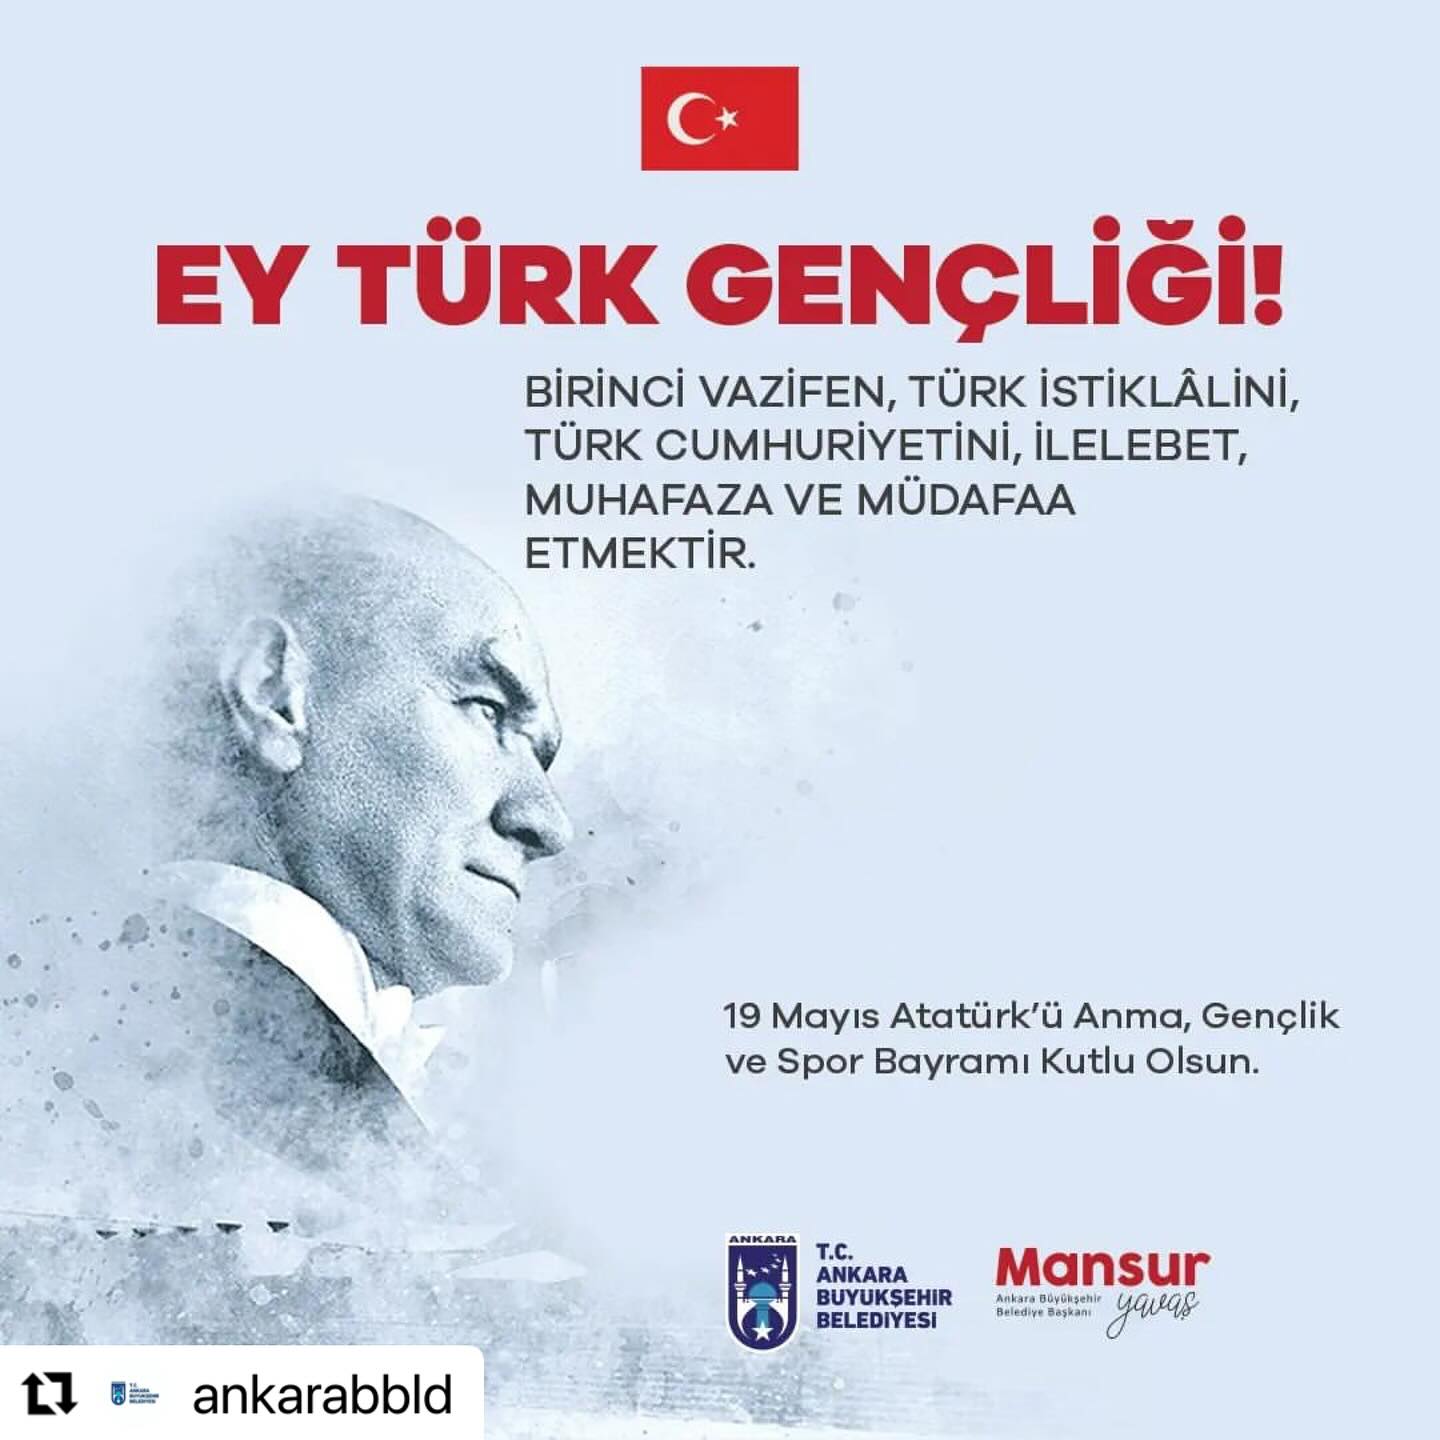 Ankara Büyükşehir Belediyesi, Gençlerle Birlikte 19 Mayıs Atatürk’ü Anma Bayramını Kutladı